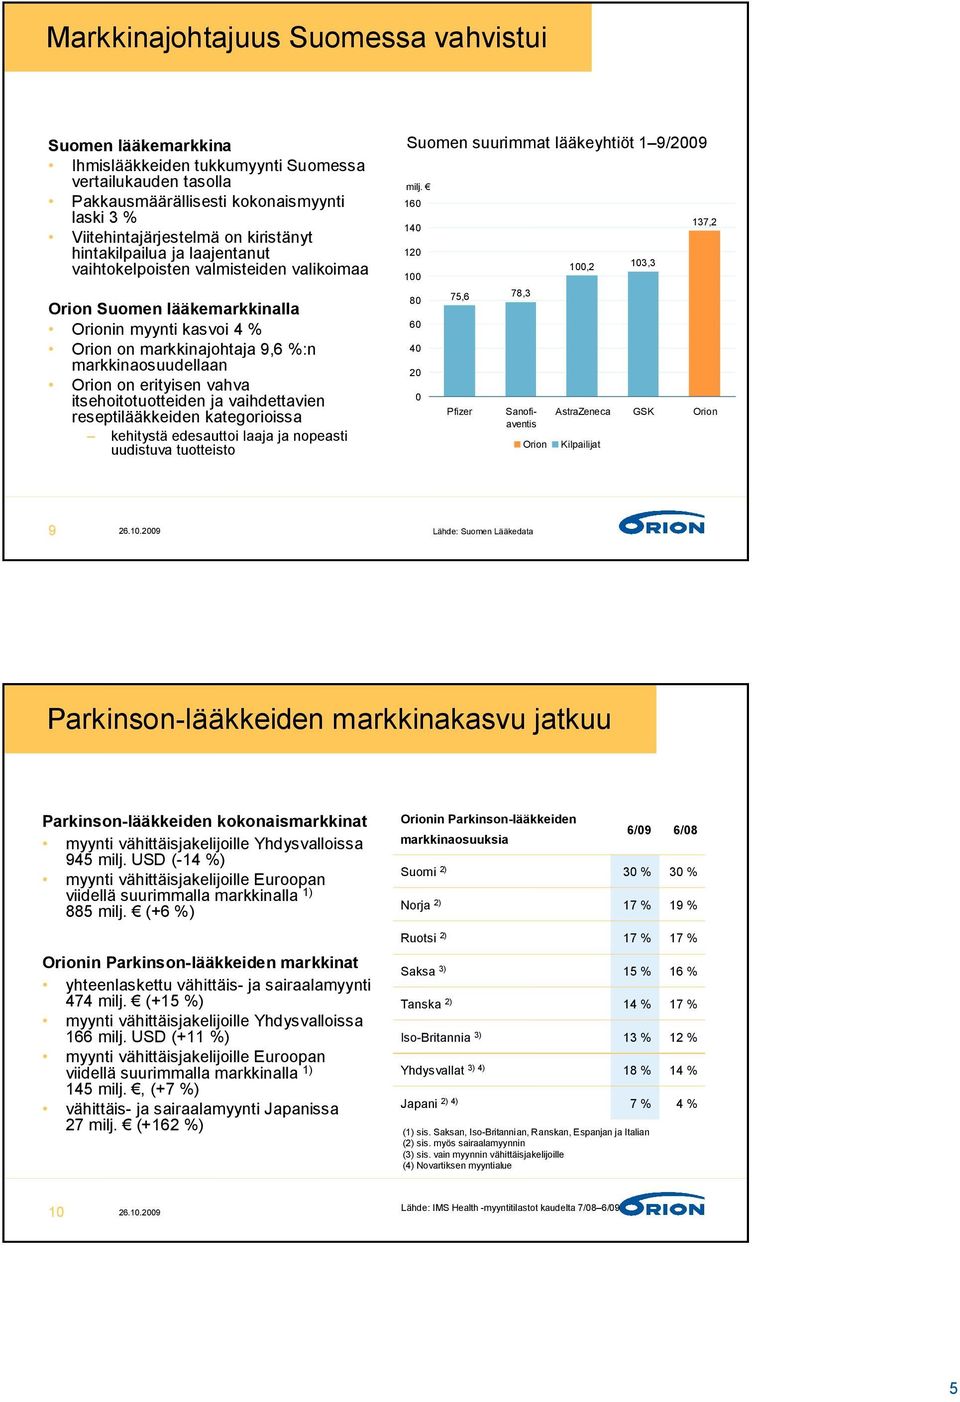 vahva itsehoitotuotteiden ja vaihdettavien reseptilääkkeiden kategorioissa kehitystä edesauttoi laaja ja nopeasti uudistuva tuotteisto Suomen suurimmat lääkeyhtiöt 1 9/2009 milj.